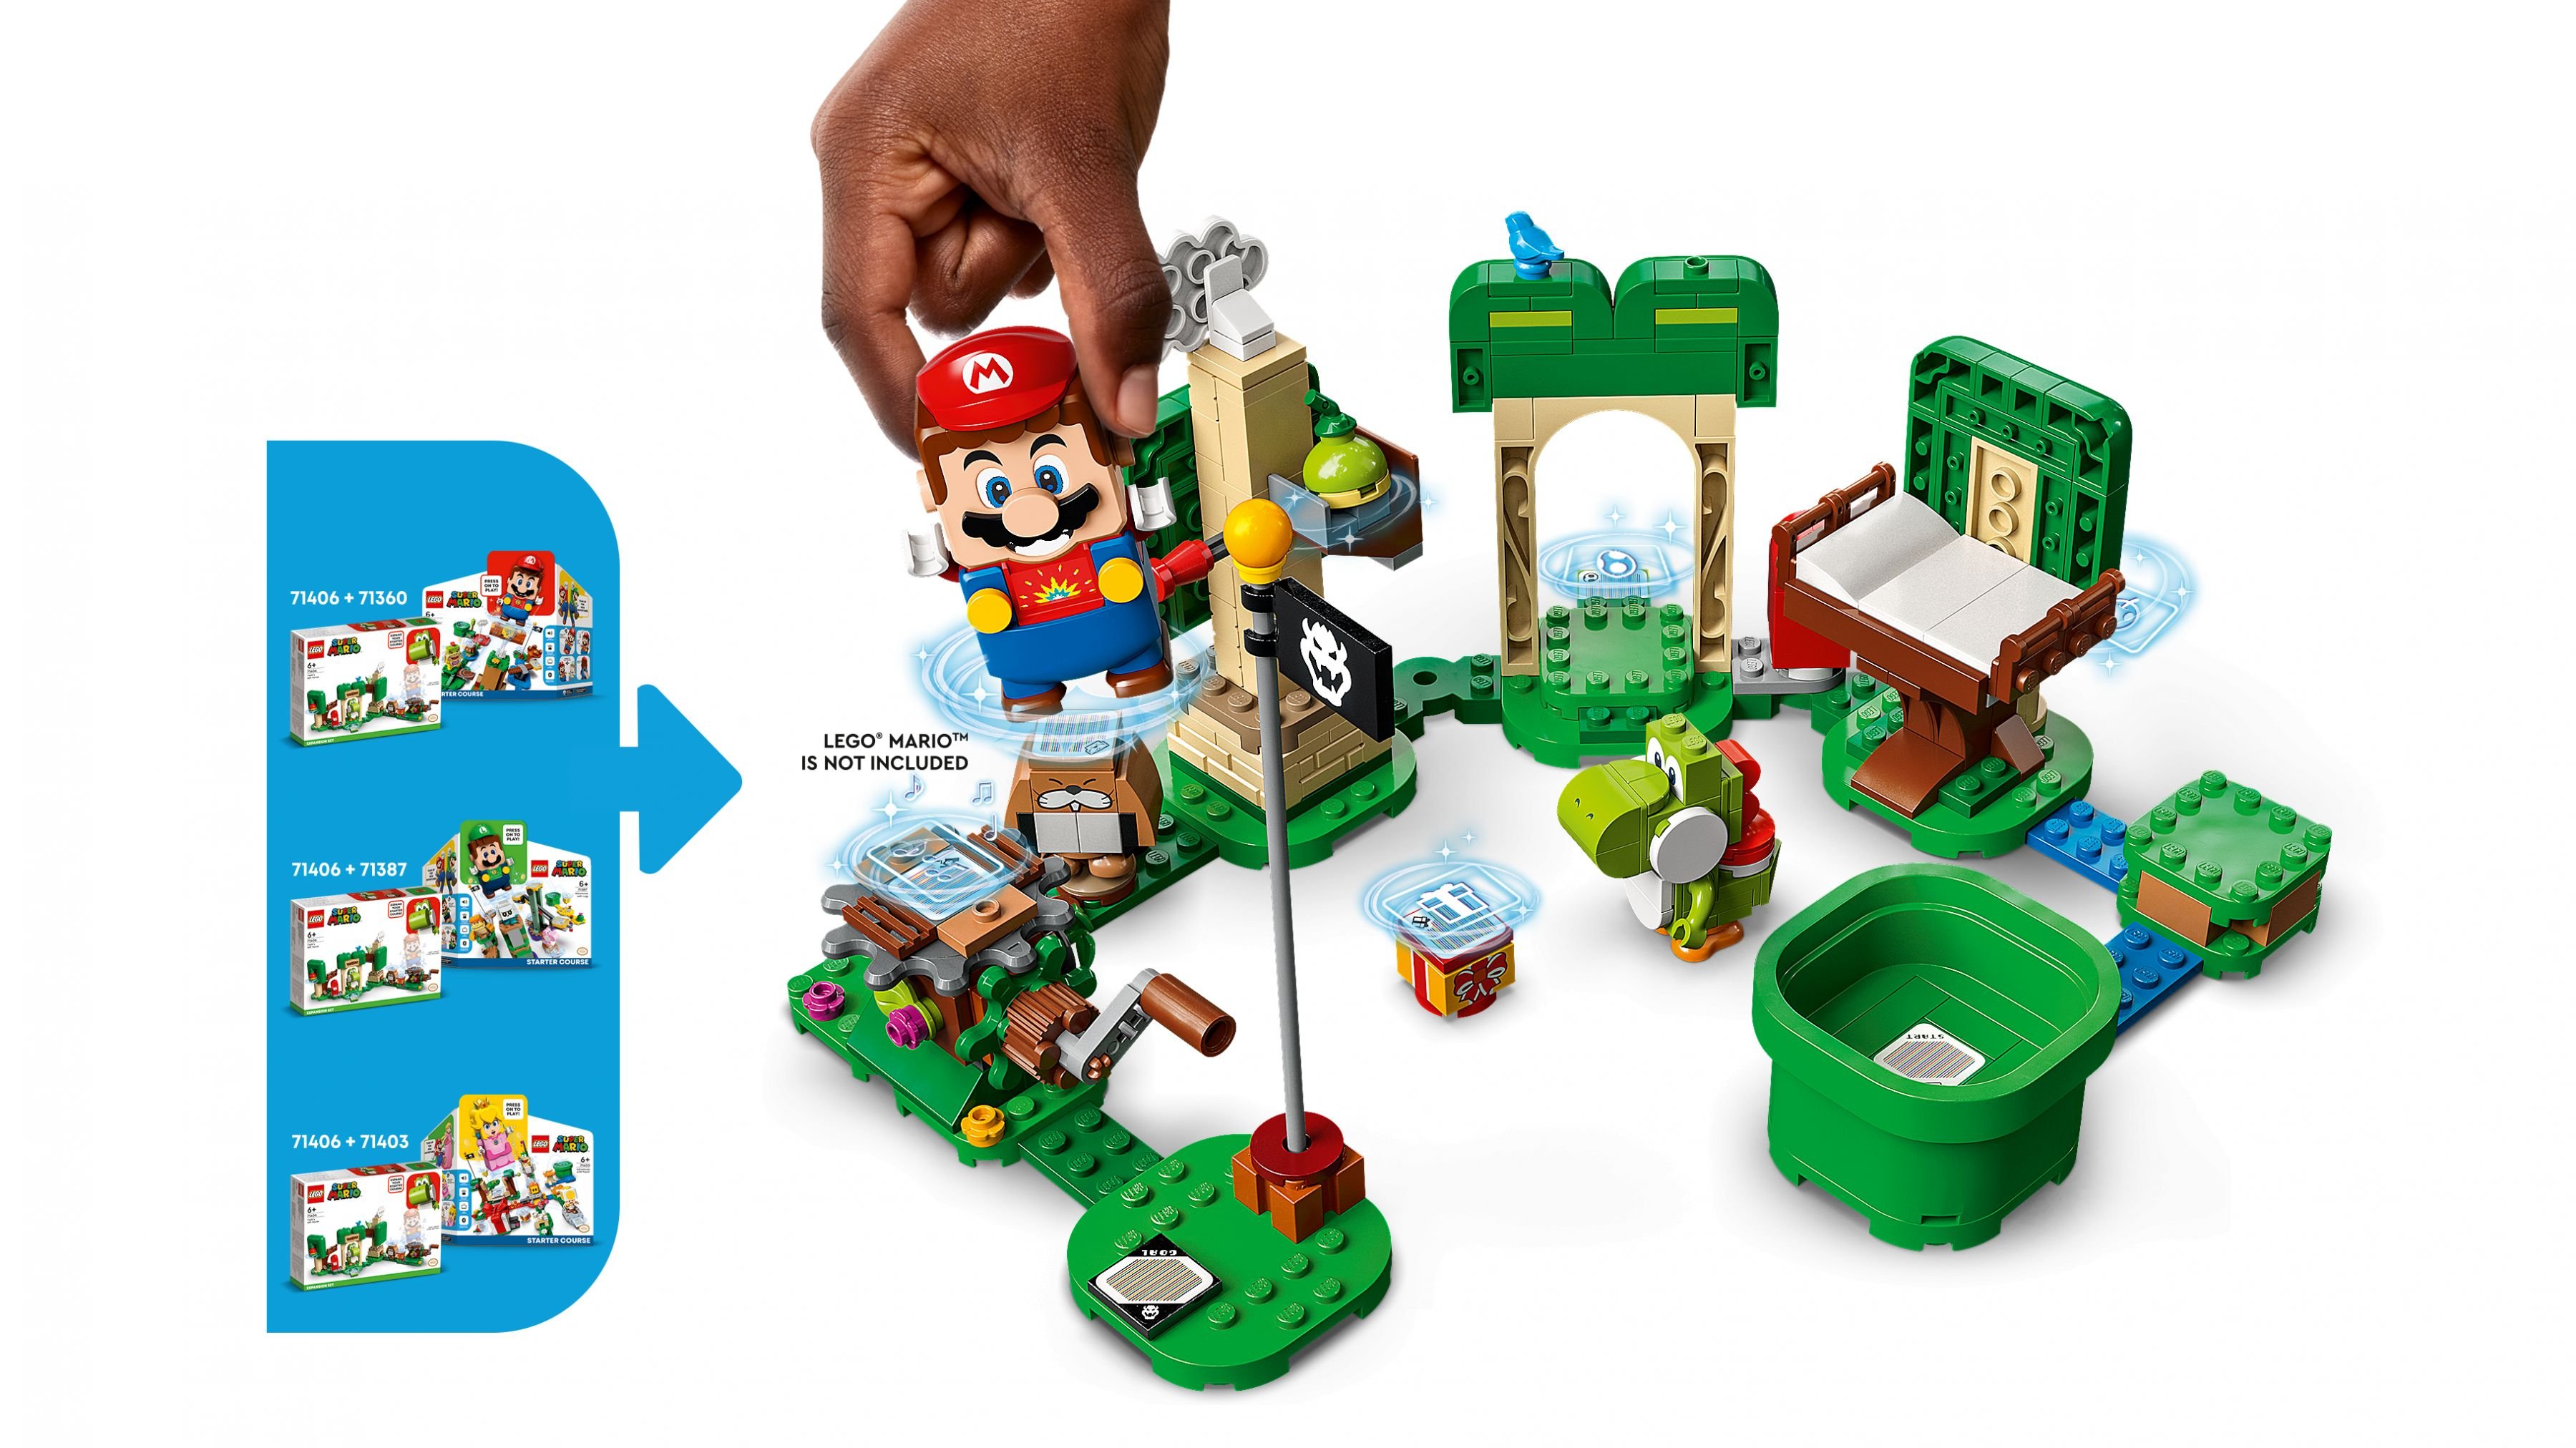 LEGO Super Mario 71406 Yoshis Geschenkhaus – Erweiterungsset LEGO_71406_WEB_SEC03_NOBG.jpg